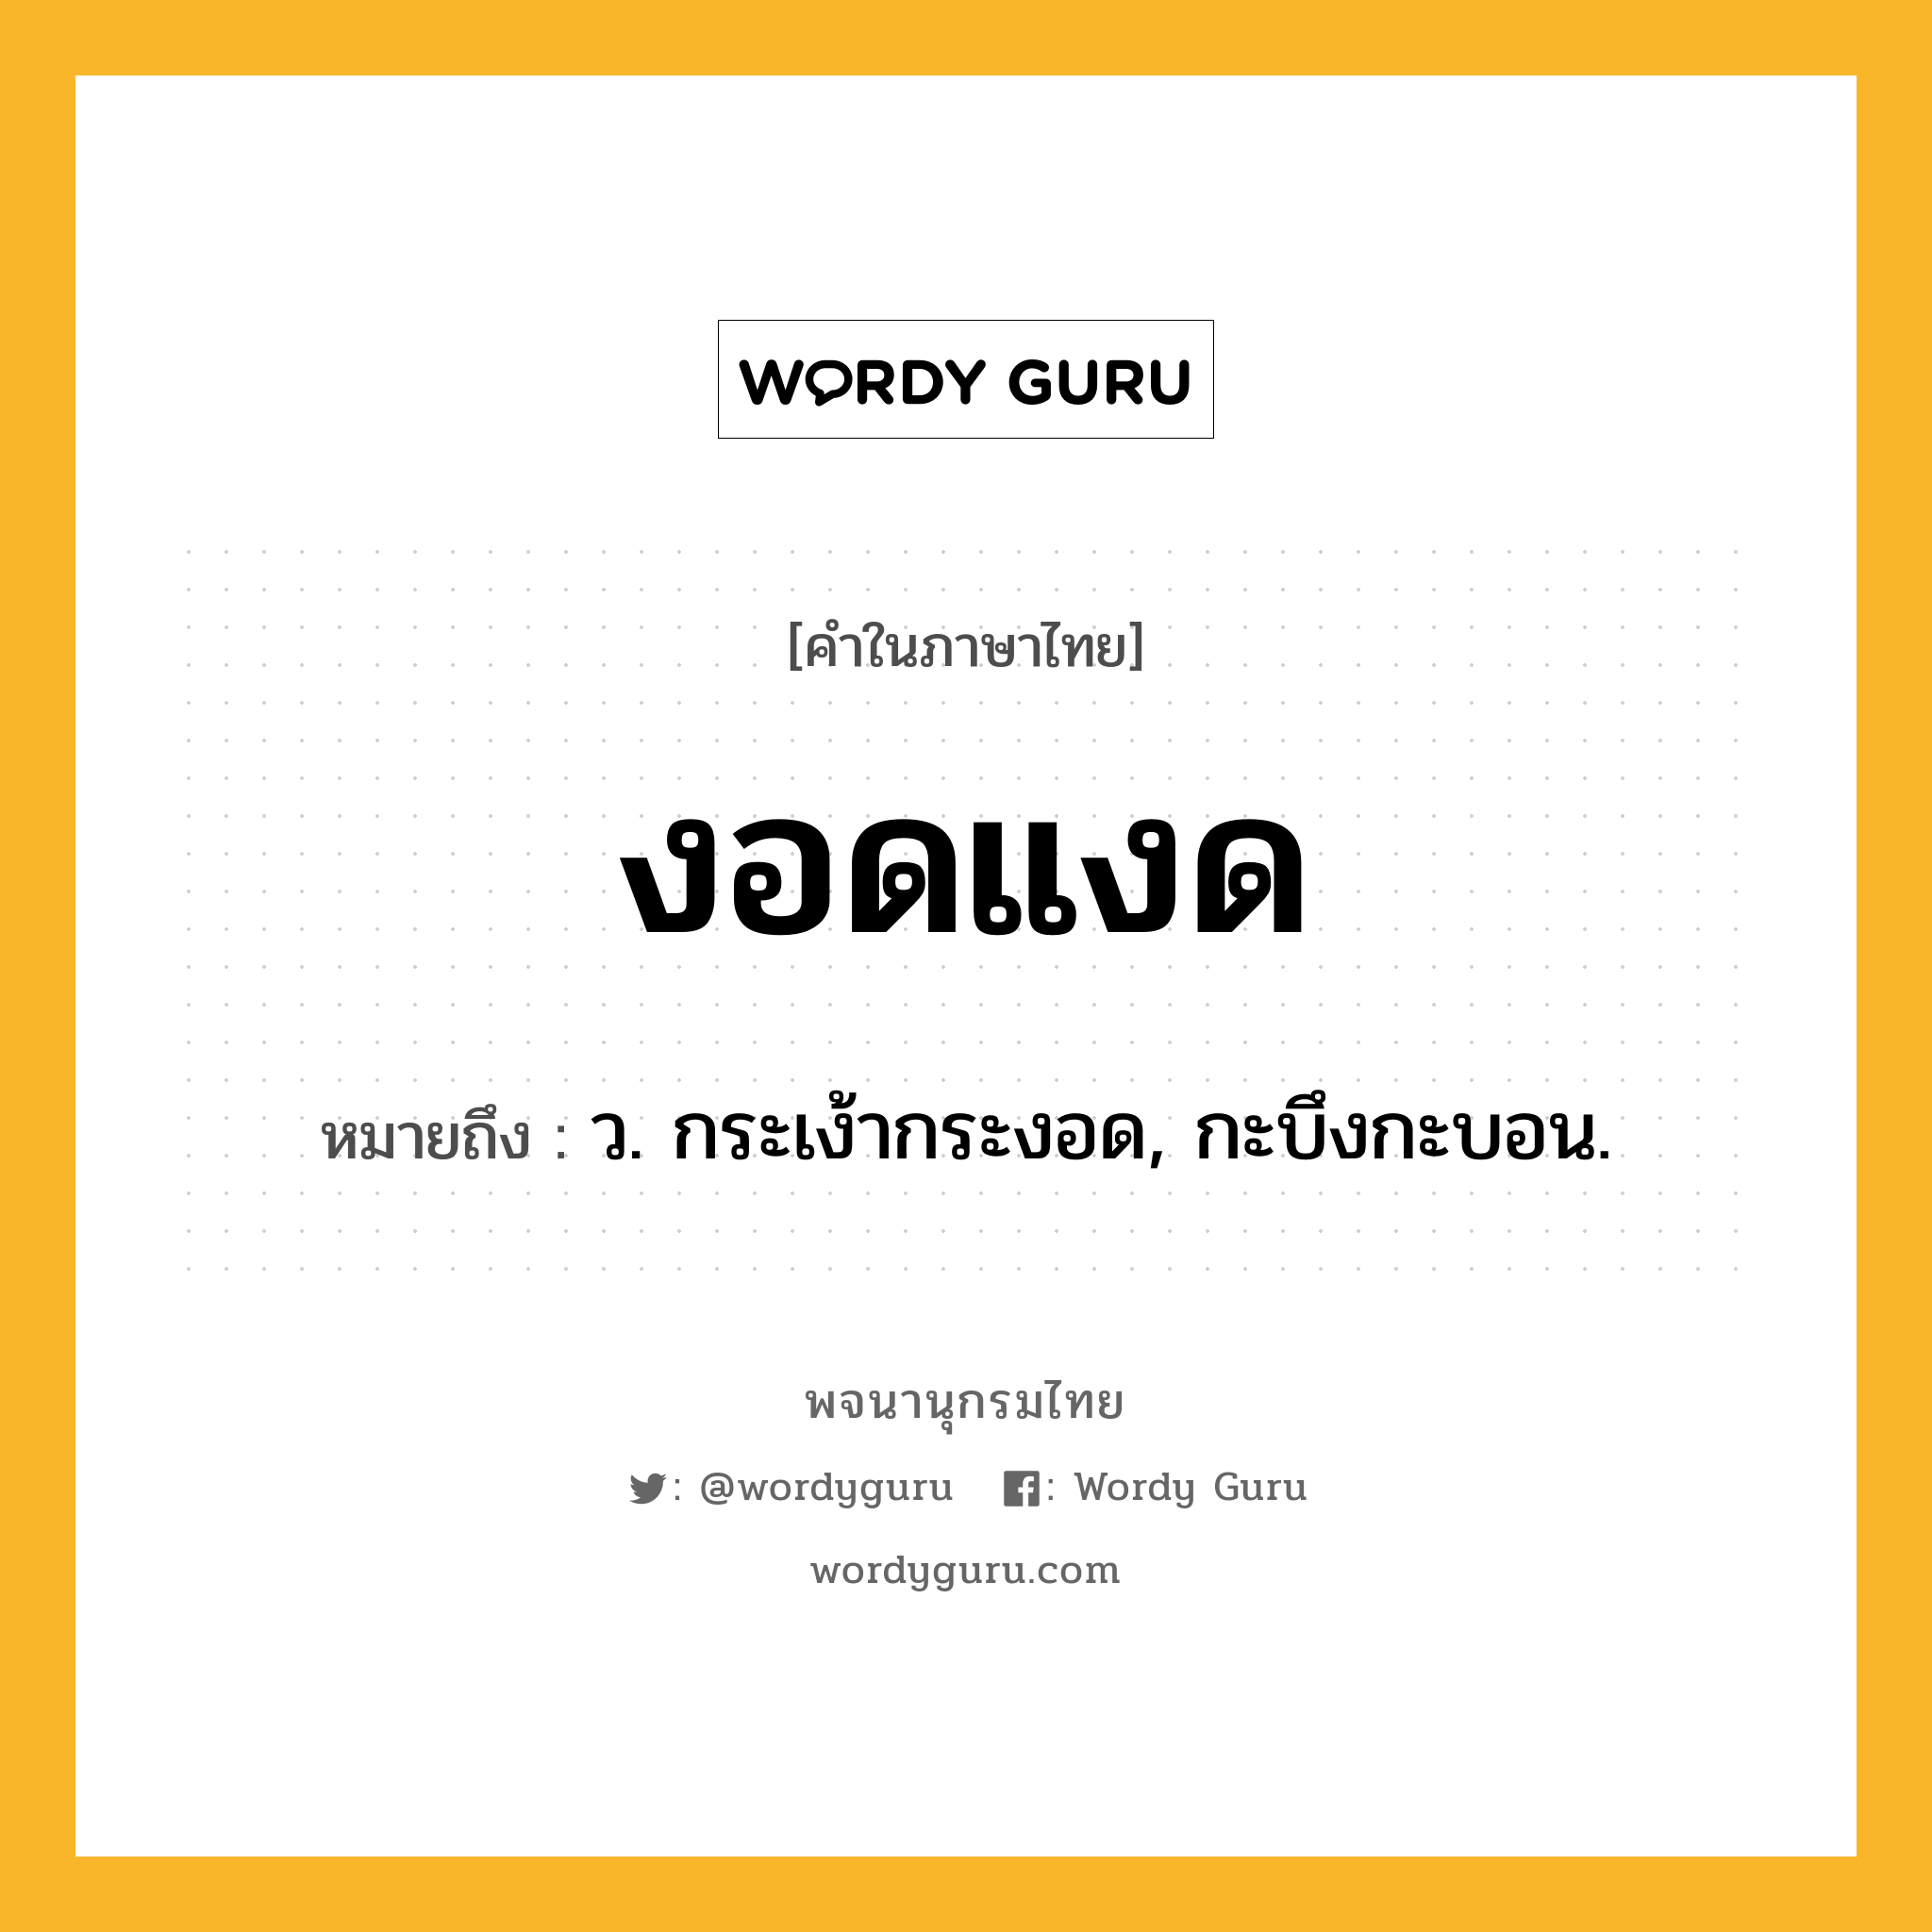 งอดแงด หมายถึงอะไร?, คำในภาษาไทย งอดแงด หมายถึง ว. กระเง้ากระงอด, กะบึงกะบอน.